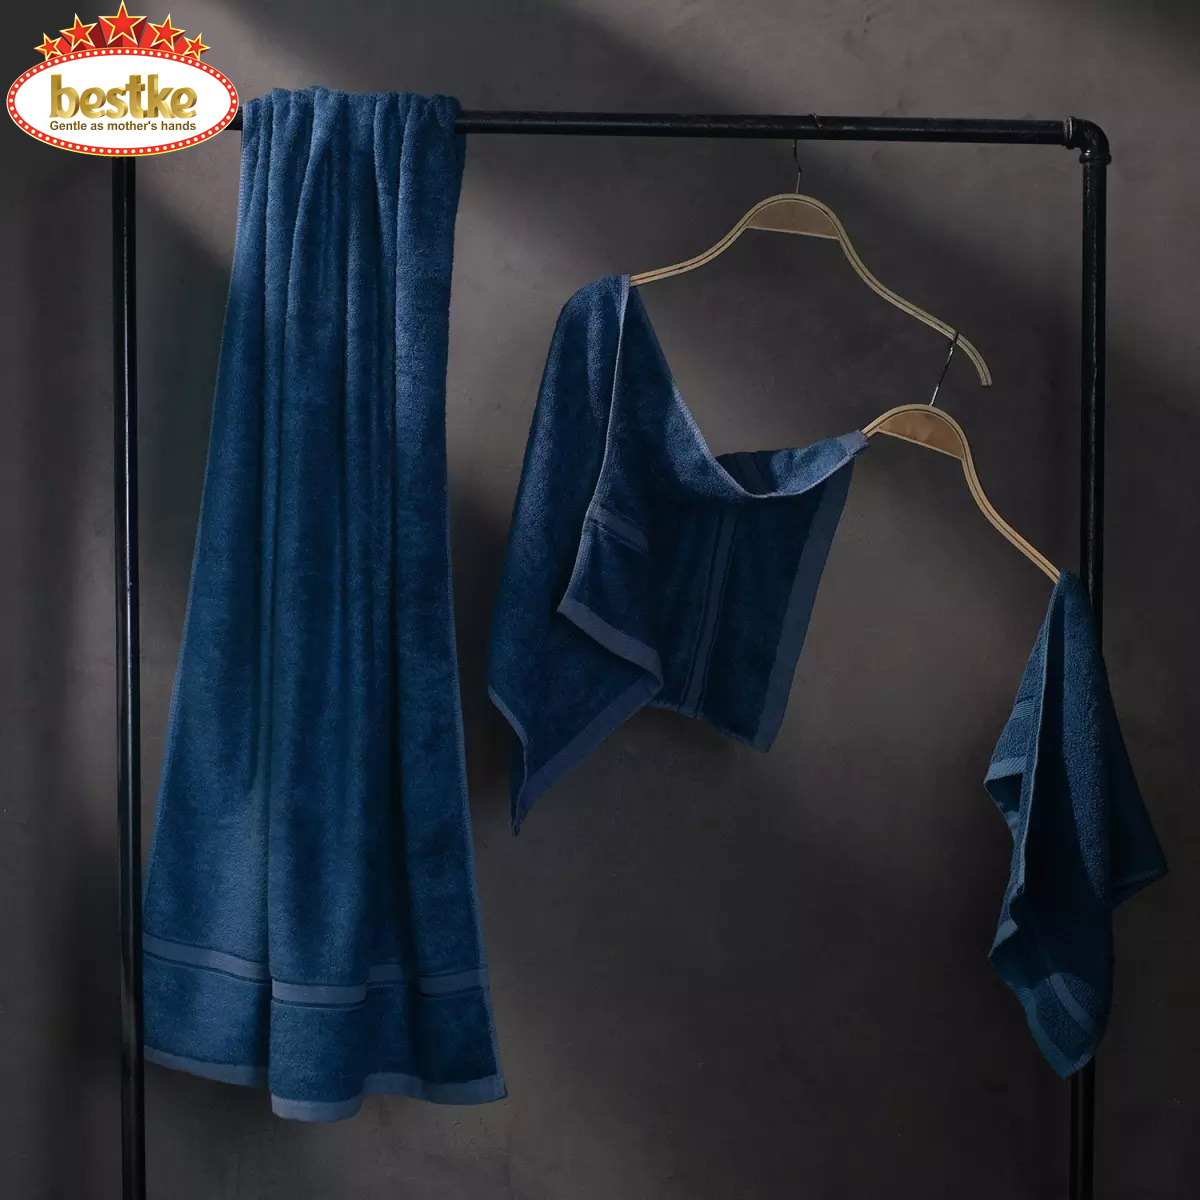 Khăn sợi tre, Combo 2 bộ 6 khăn bamboo khăn tắm khăn gội khăn mặt bestke màu blue và nâu, khăn đẹp xuất khẩu